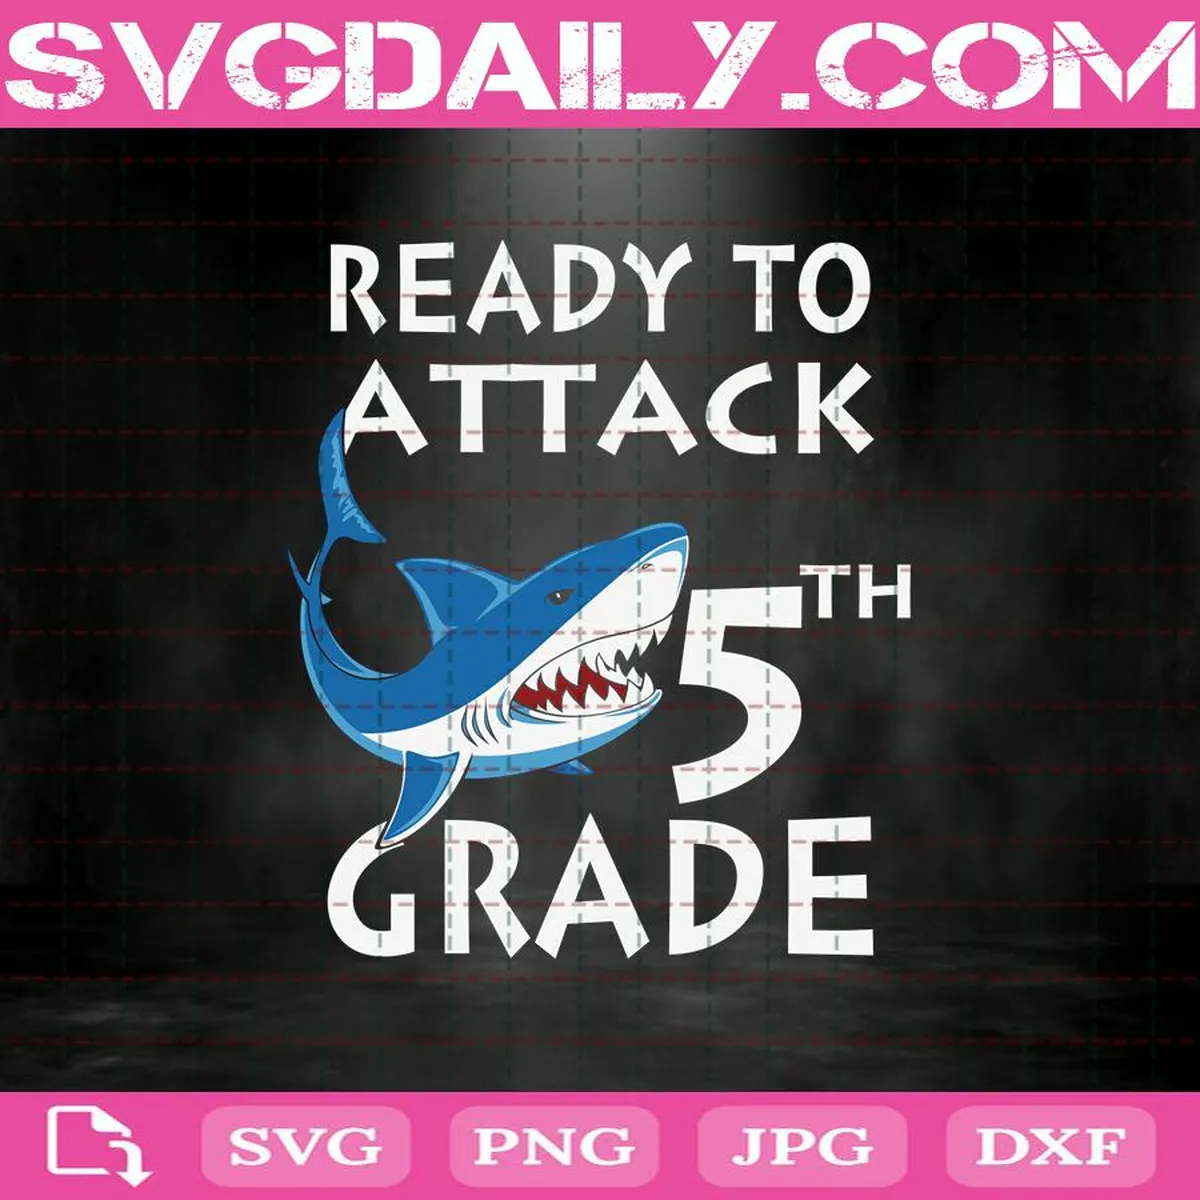 Shark Attack Svg, Shark Ready To Attack Svg, Ready To Attack 5th Grade Svg, 5th Grade Svg, Back To School Svg, School Svg